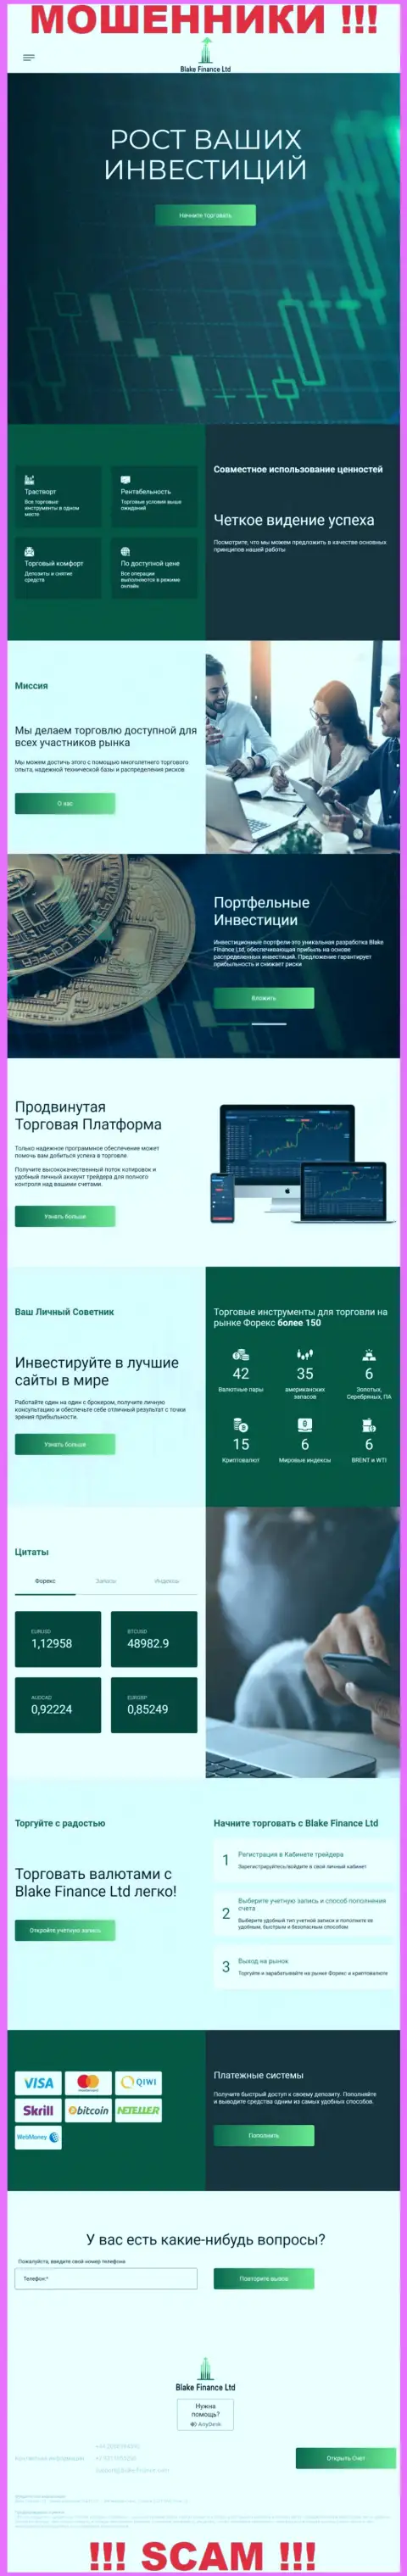 Информационный портал мошенников БлэкФинанс